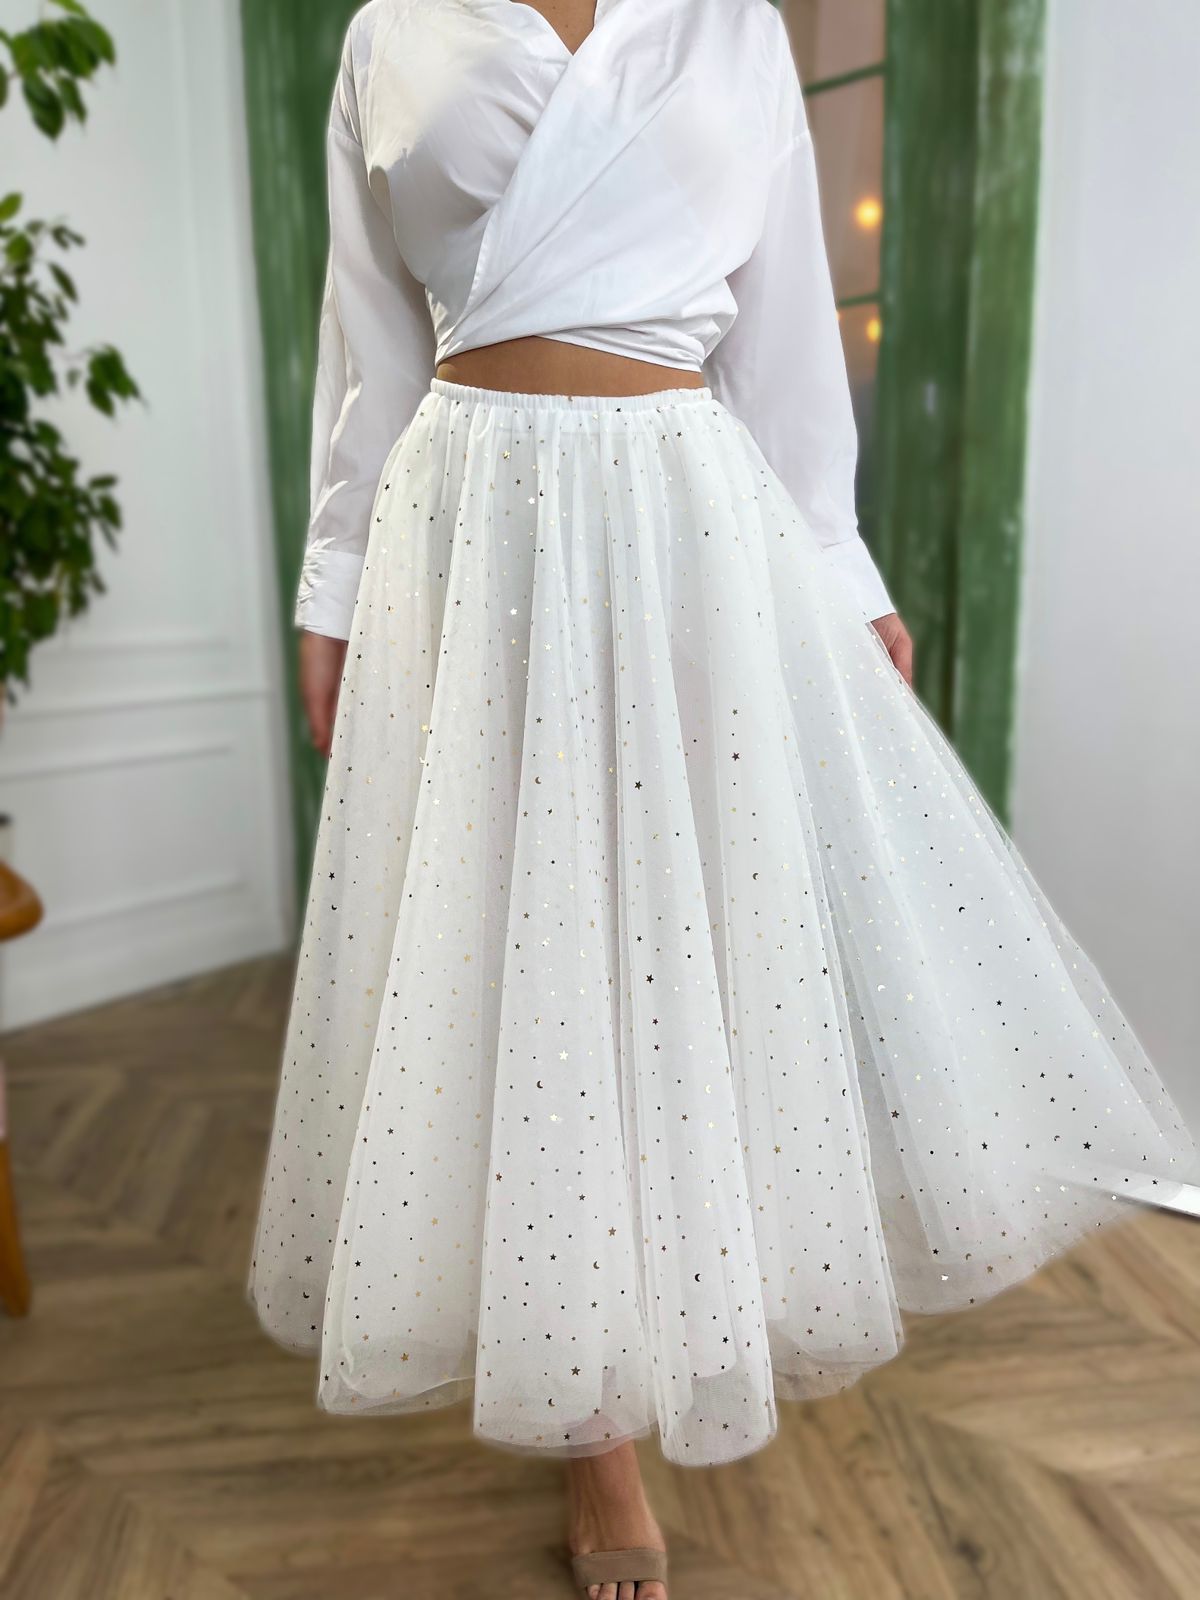 White starry skirt